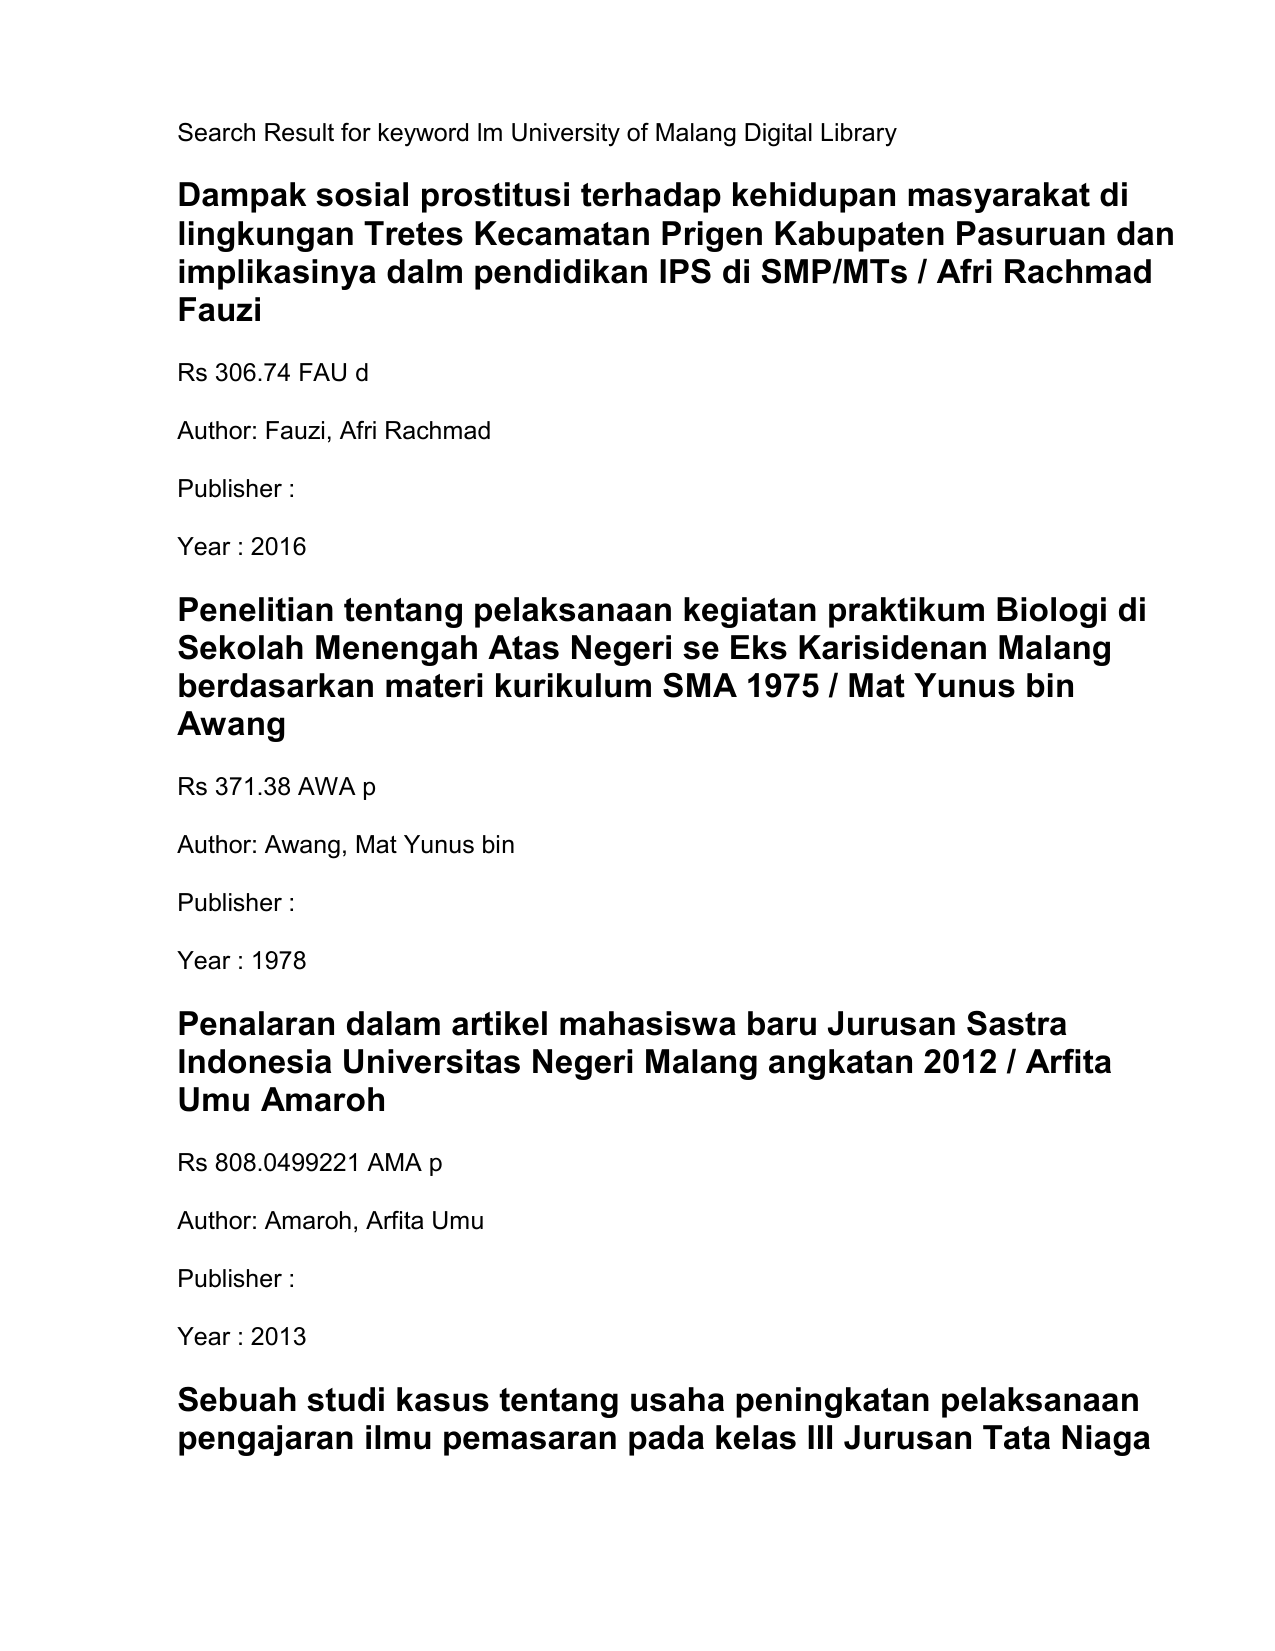 sosial prostitusi terhadap kehidupan masyarakat di lingkungan Tretes Kecamatan Prigen Kabupaten Pasuruan dan implikasinya dalm pendidikan IPS di SMP MTs